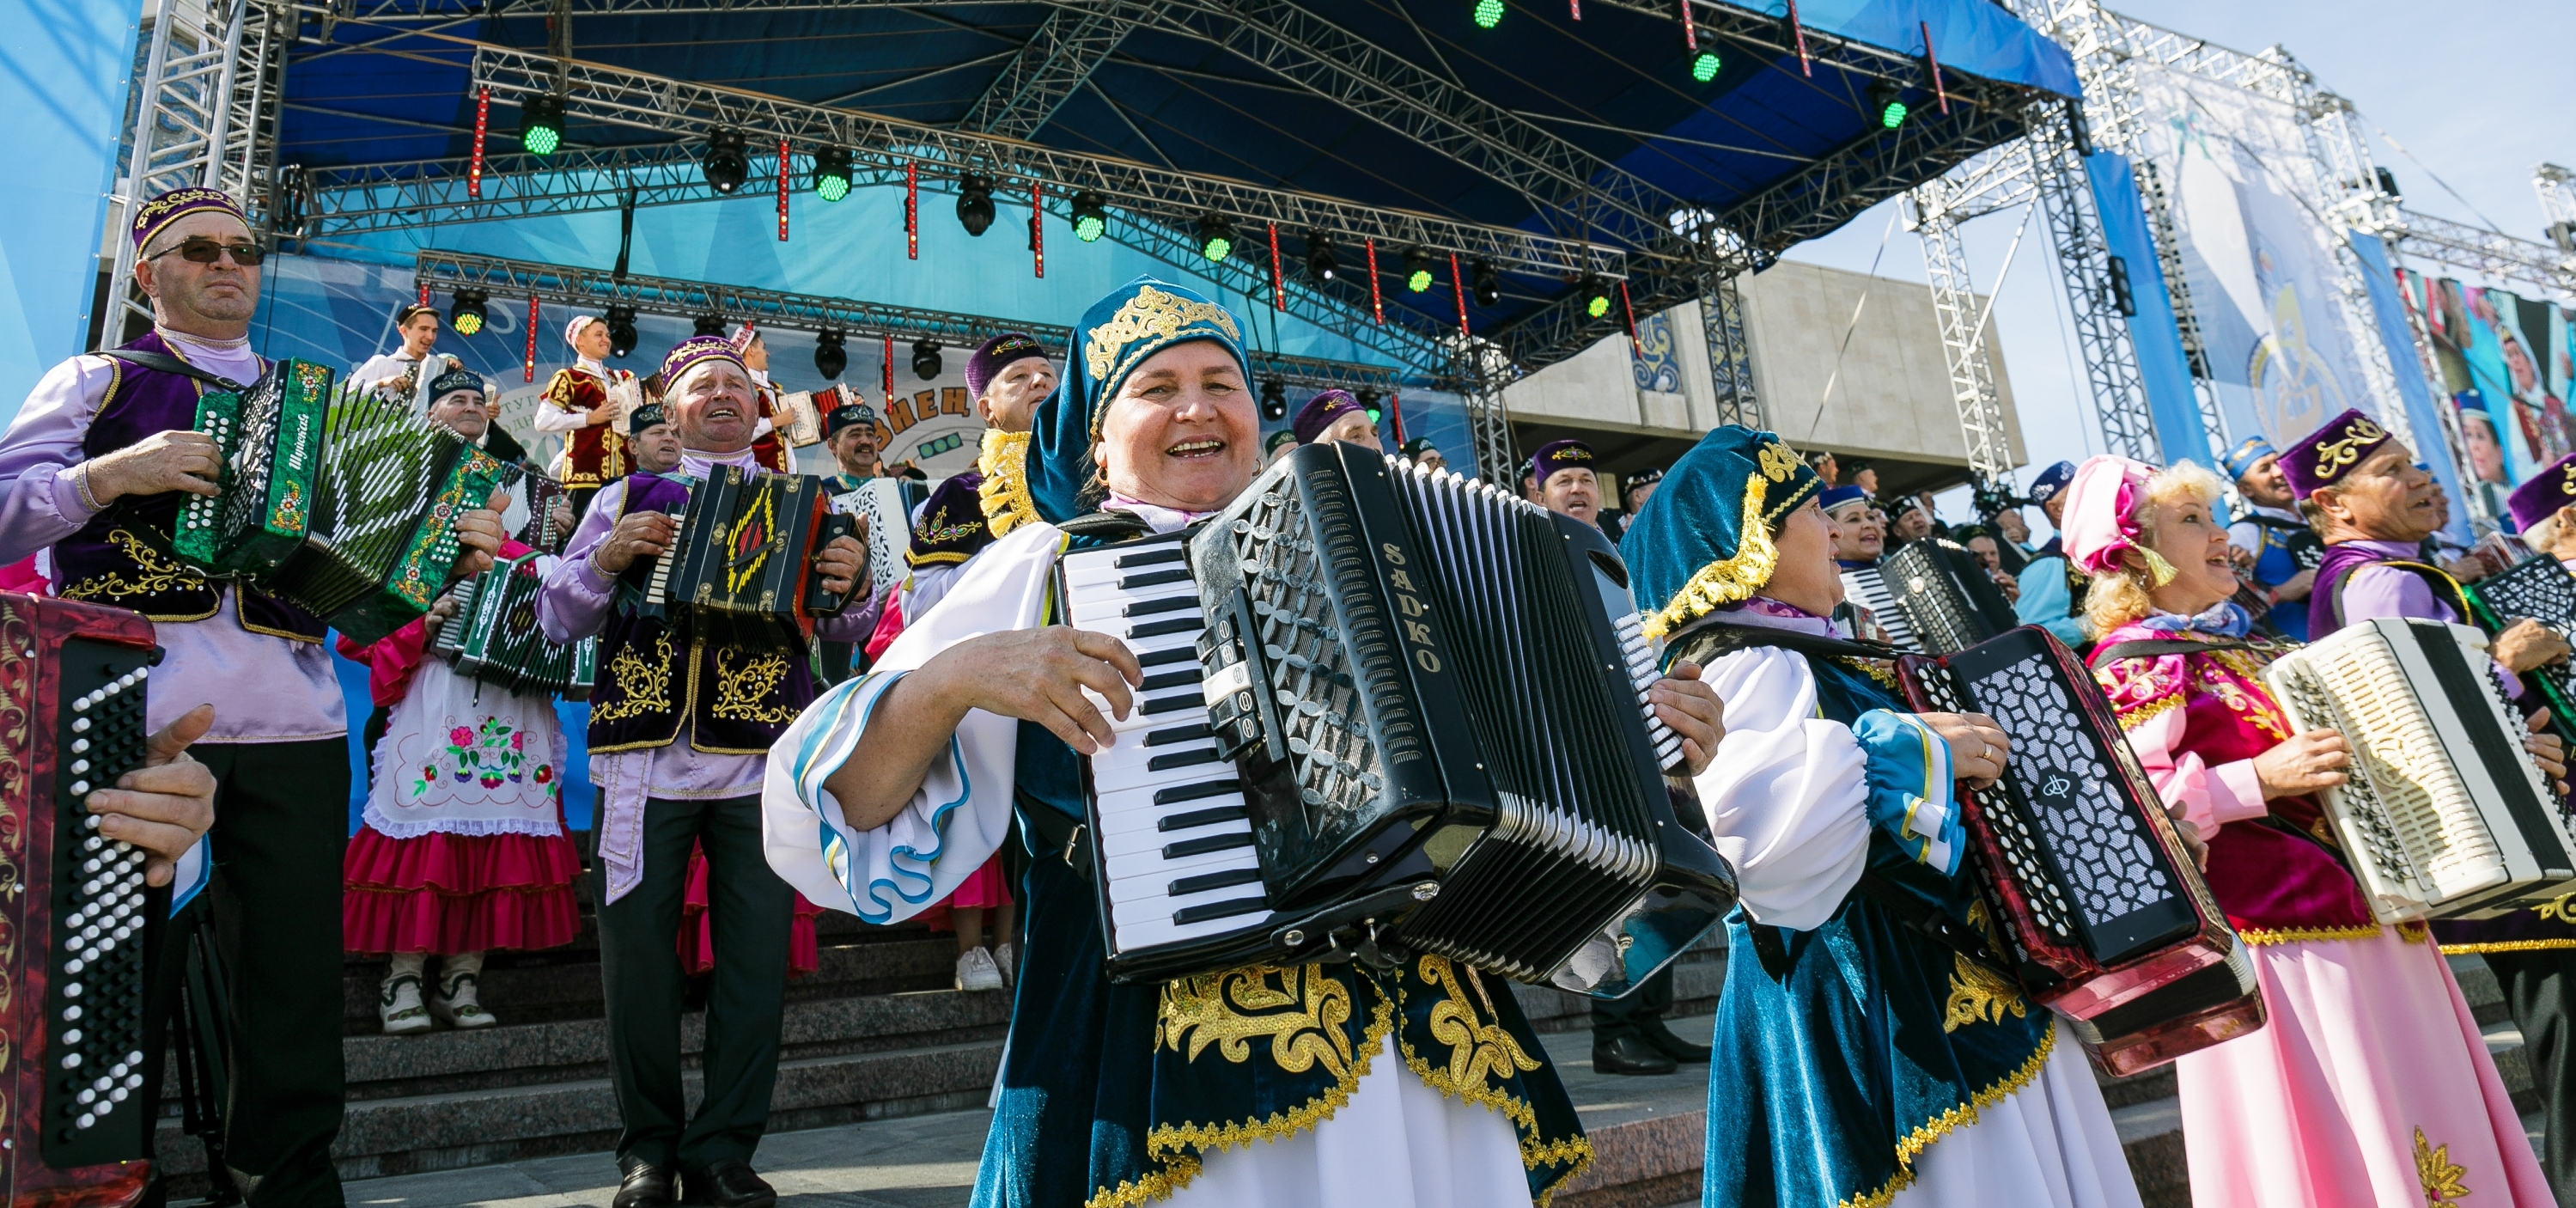 30 августа в Казани отметили масштабным праздником «Играй, гармонь!» – «Уйнагыз, гармуннар!»